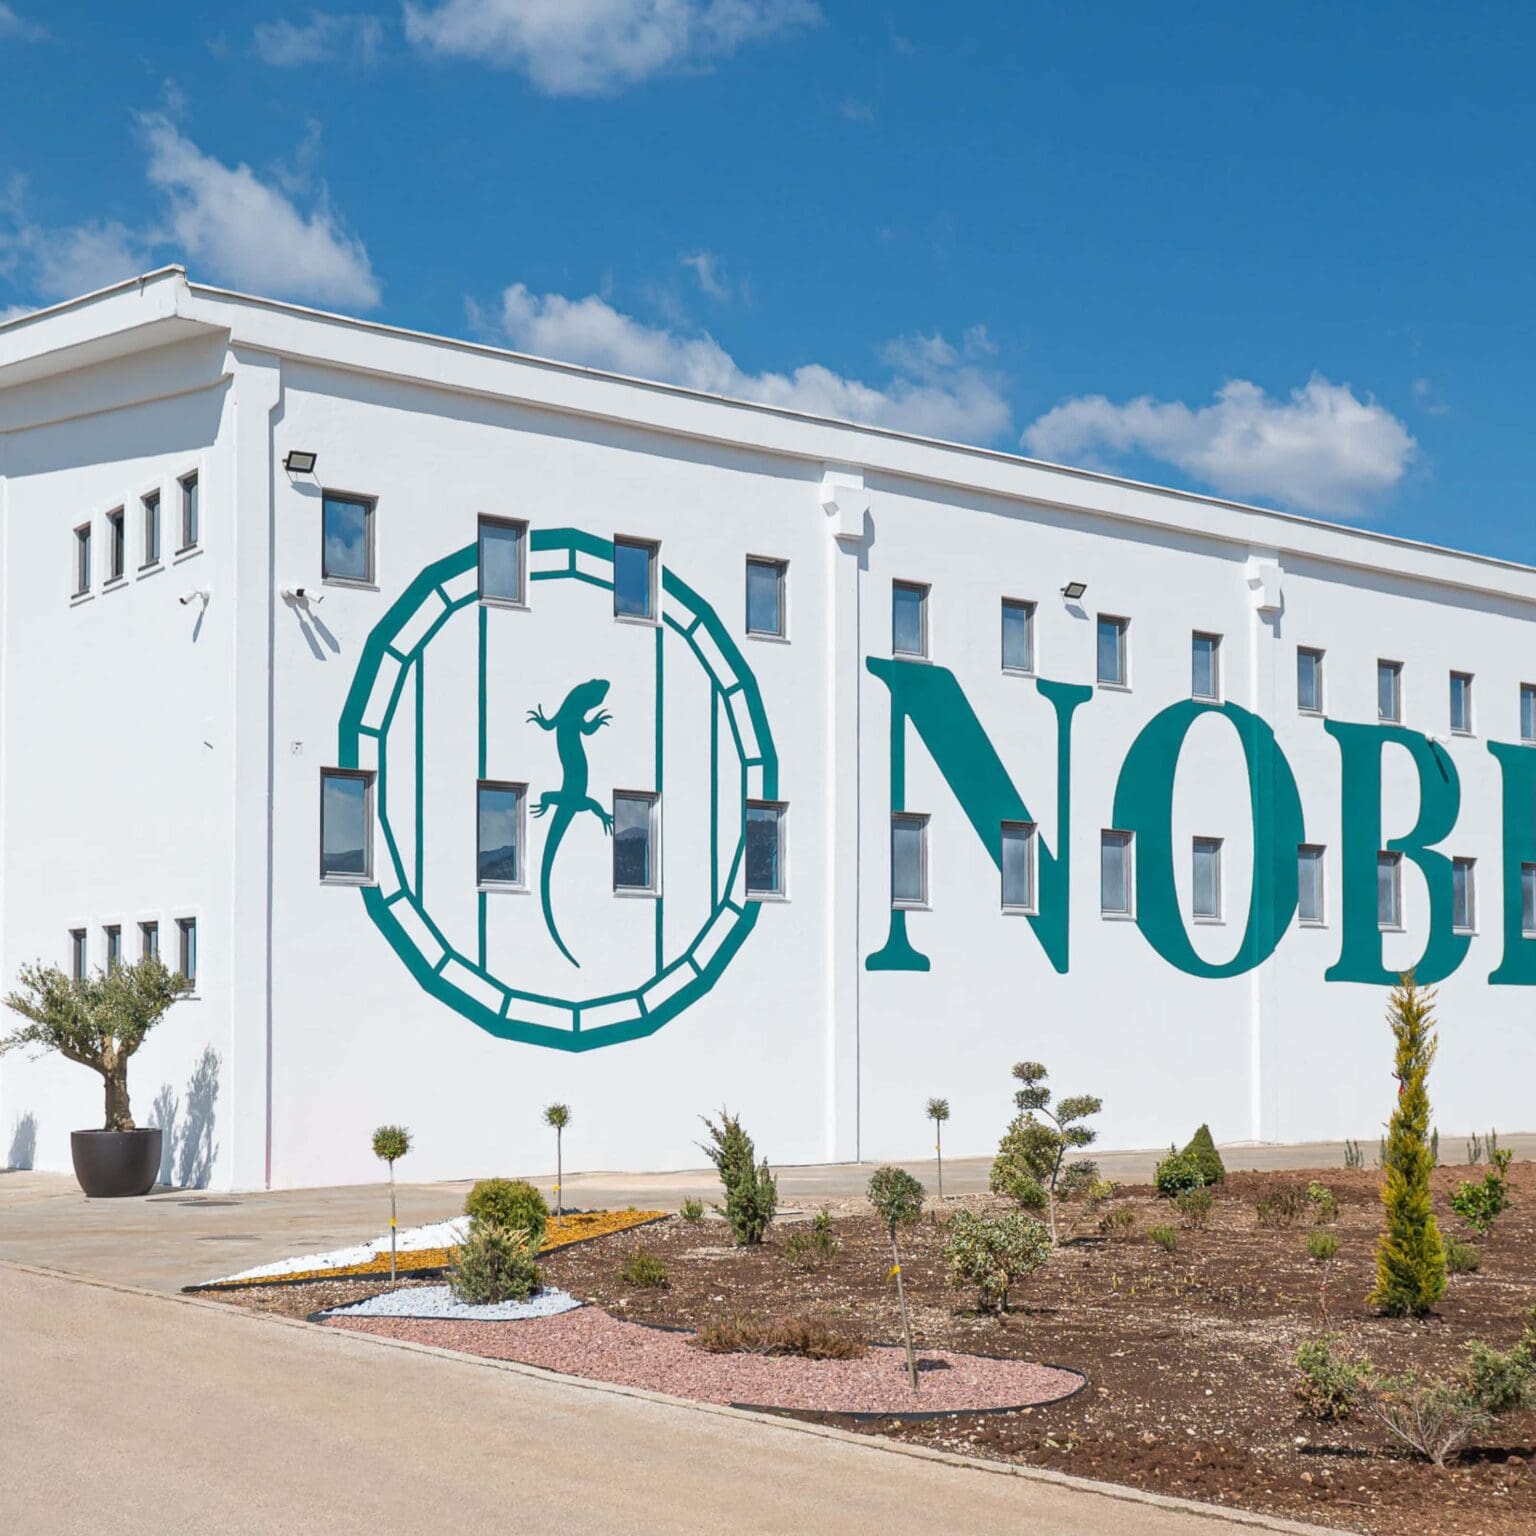 Noblewood distillery in Montenegro